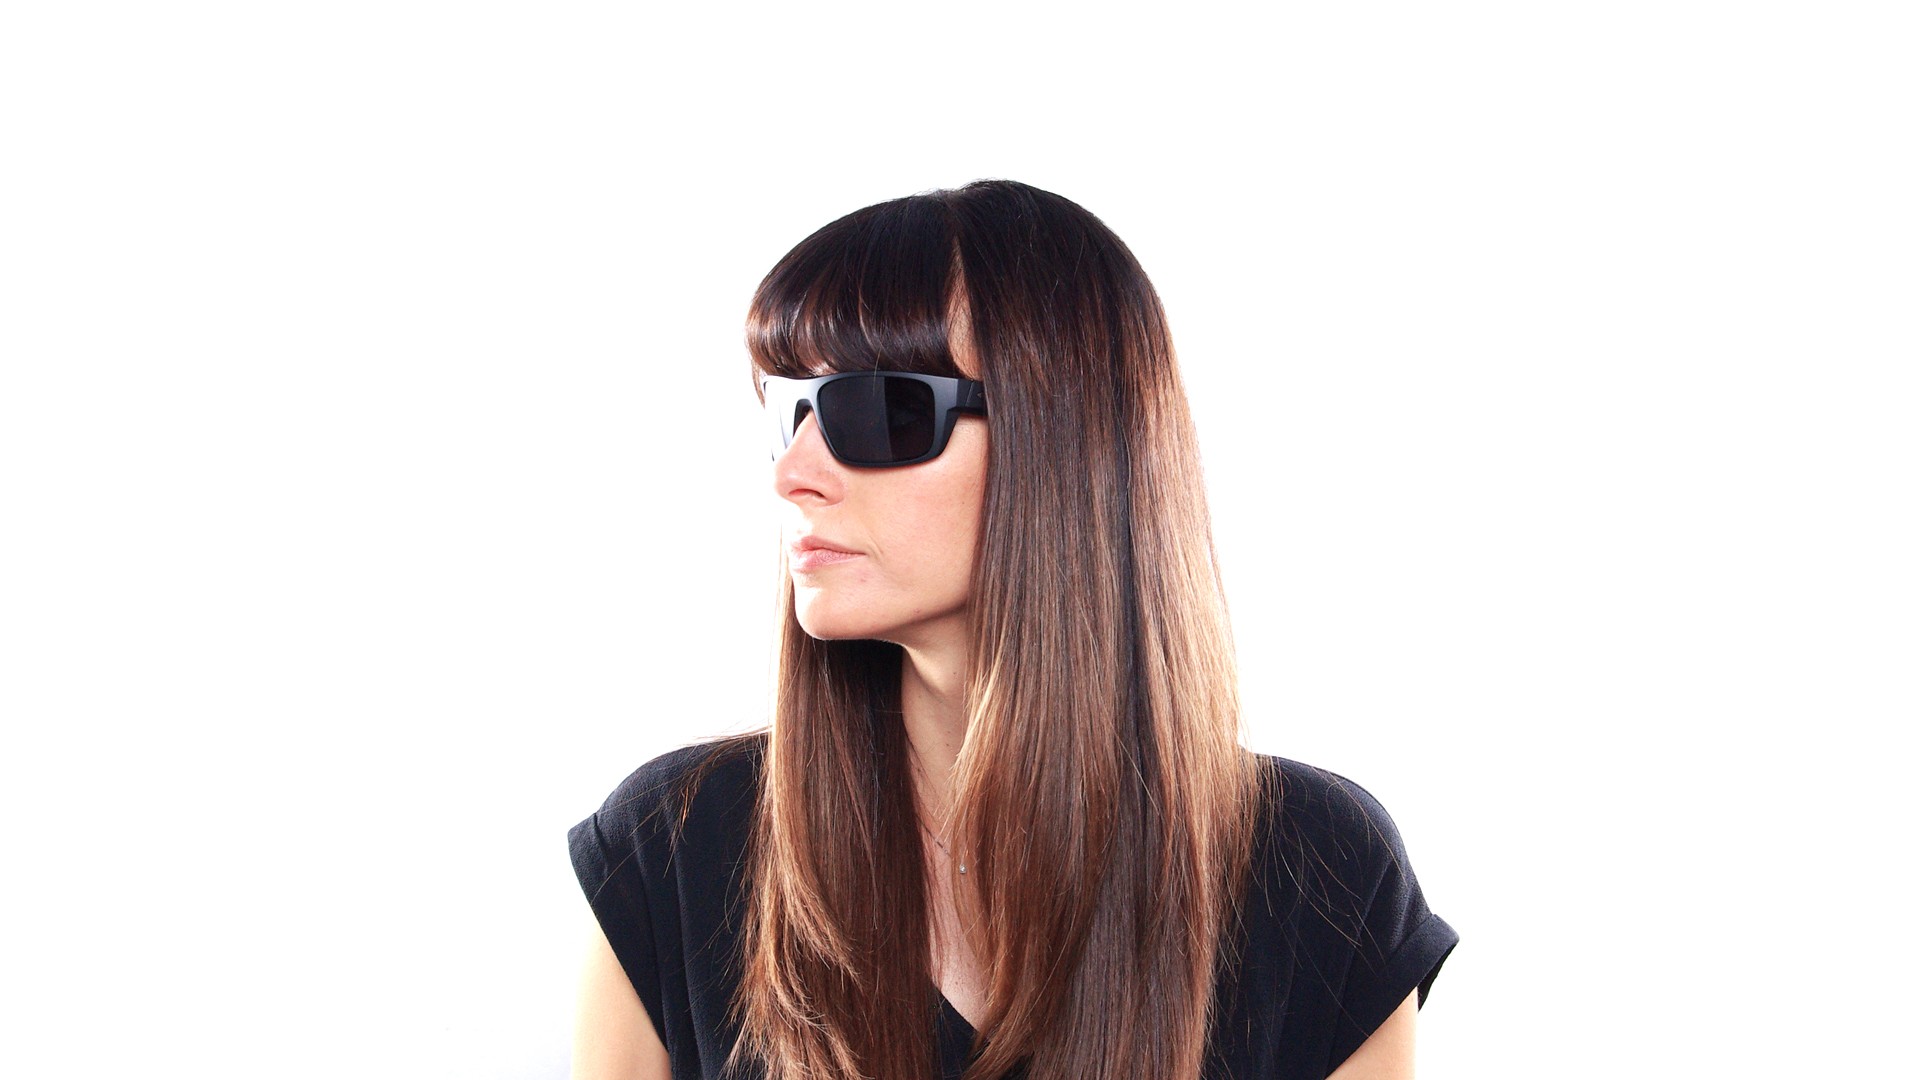 oakley women's drop in polarized sunglasses